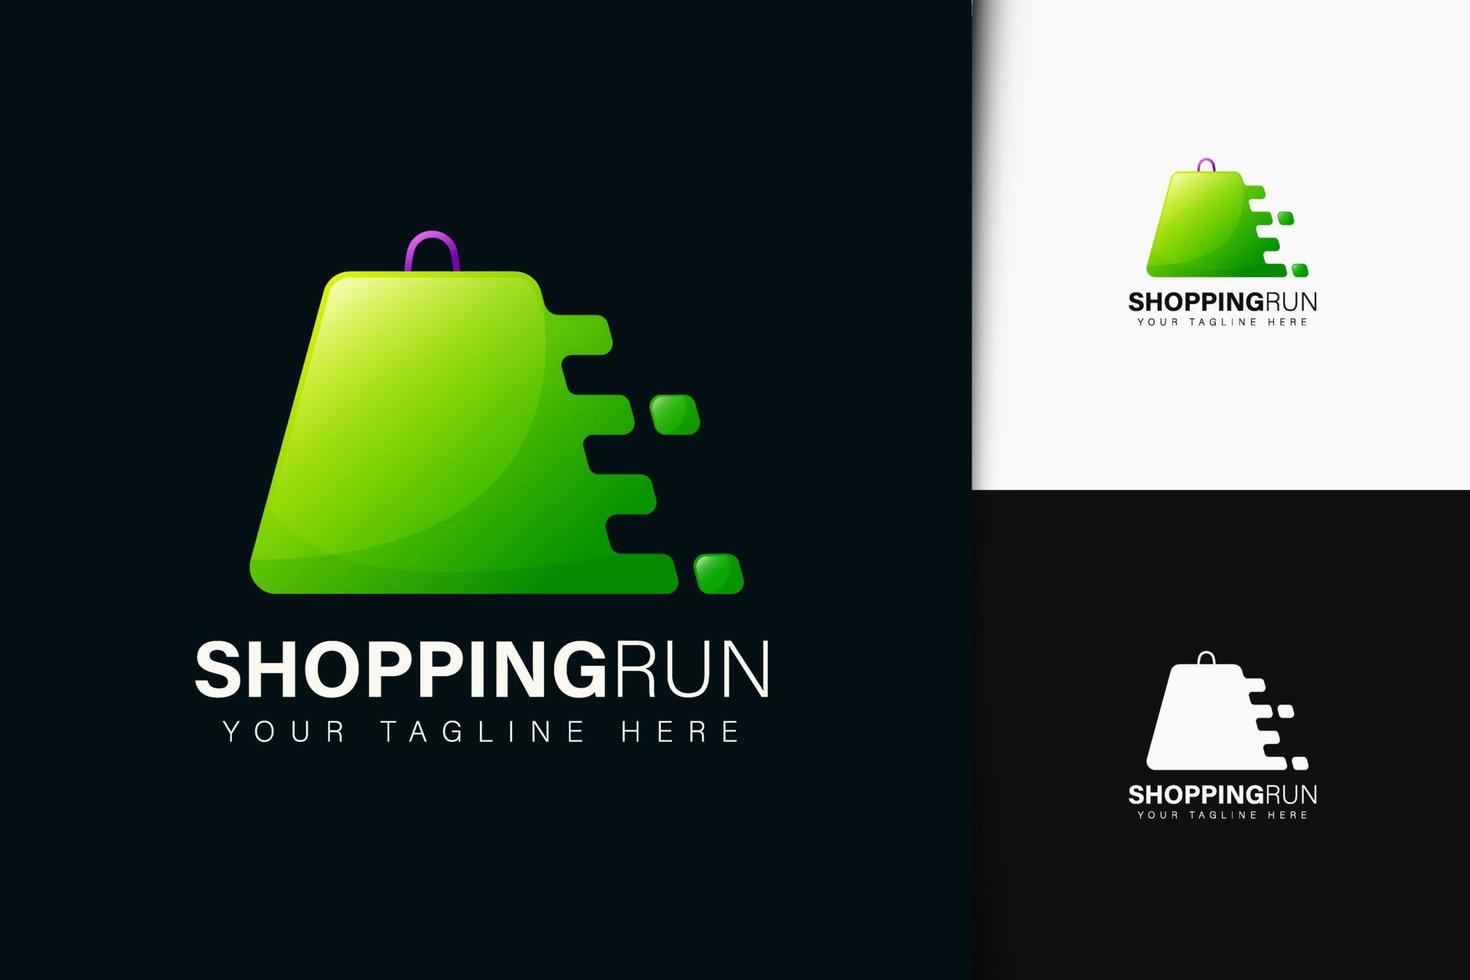 Shopping run logo design with gradient vector